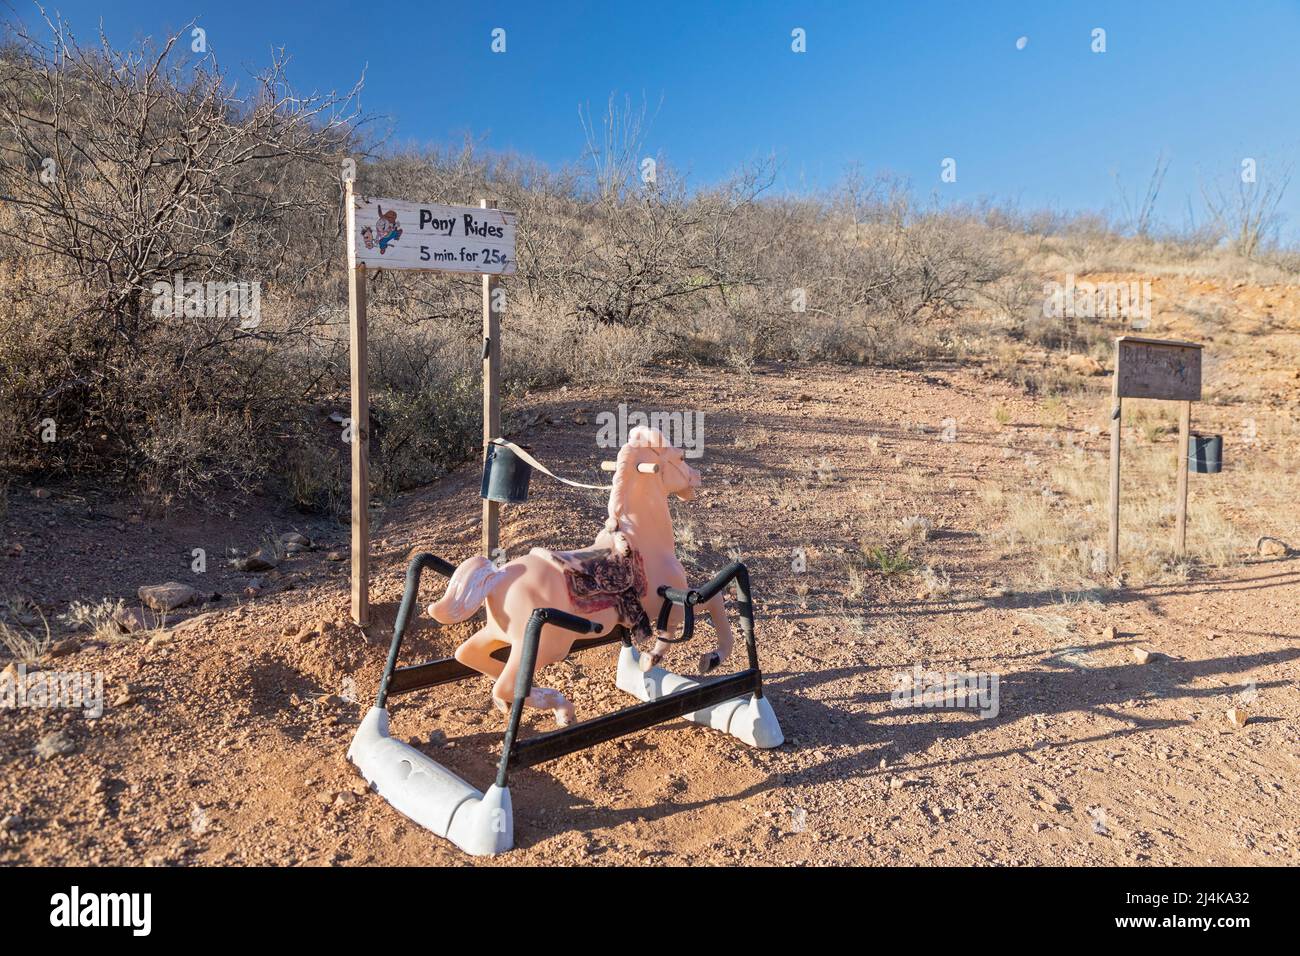 Douglas, Arizona - Pony Rides sono offerte per 25 centesimi lungo il Geronimo Trail vicino al confine tra Stati Uniti e Messico nel deserto di Chihuahuan. Foto Stock